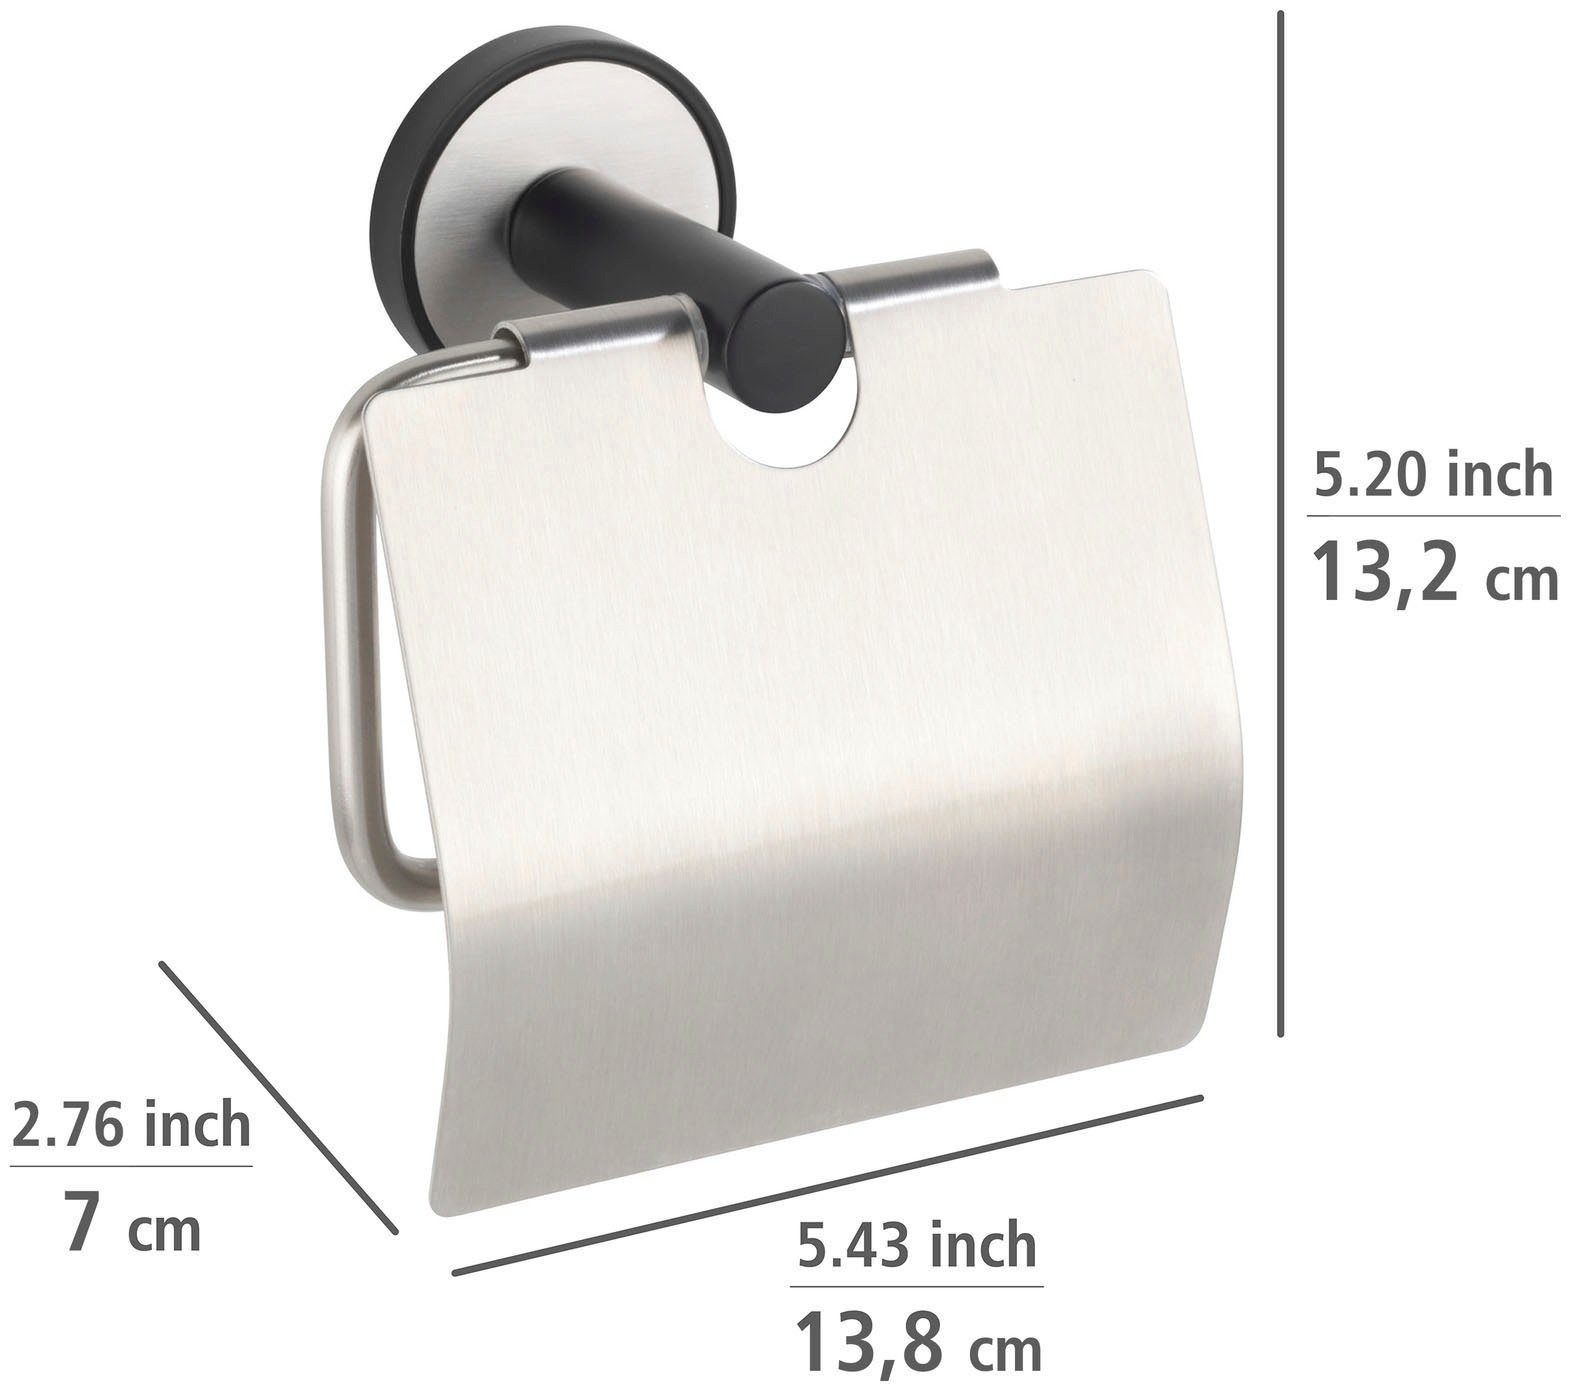 WENKO Toilettenpapierhalter UV-Loc® Bohren Befestigen Udine, ohne